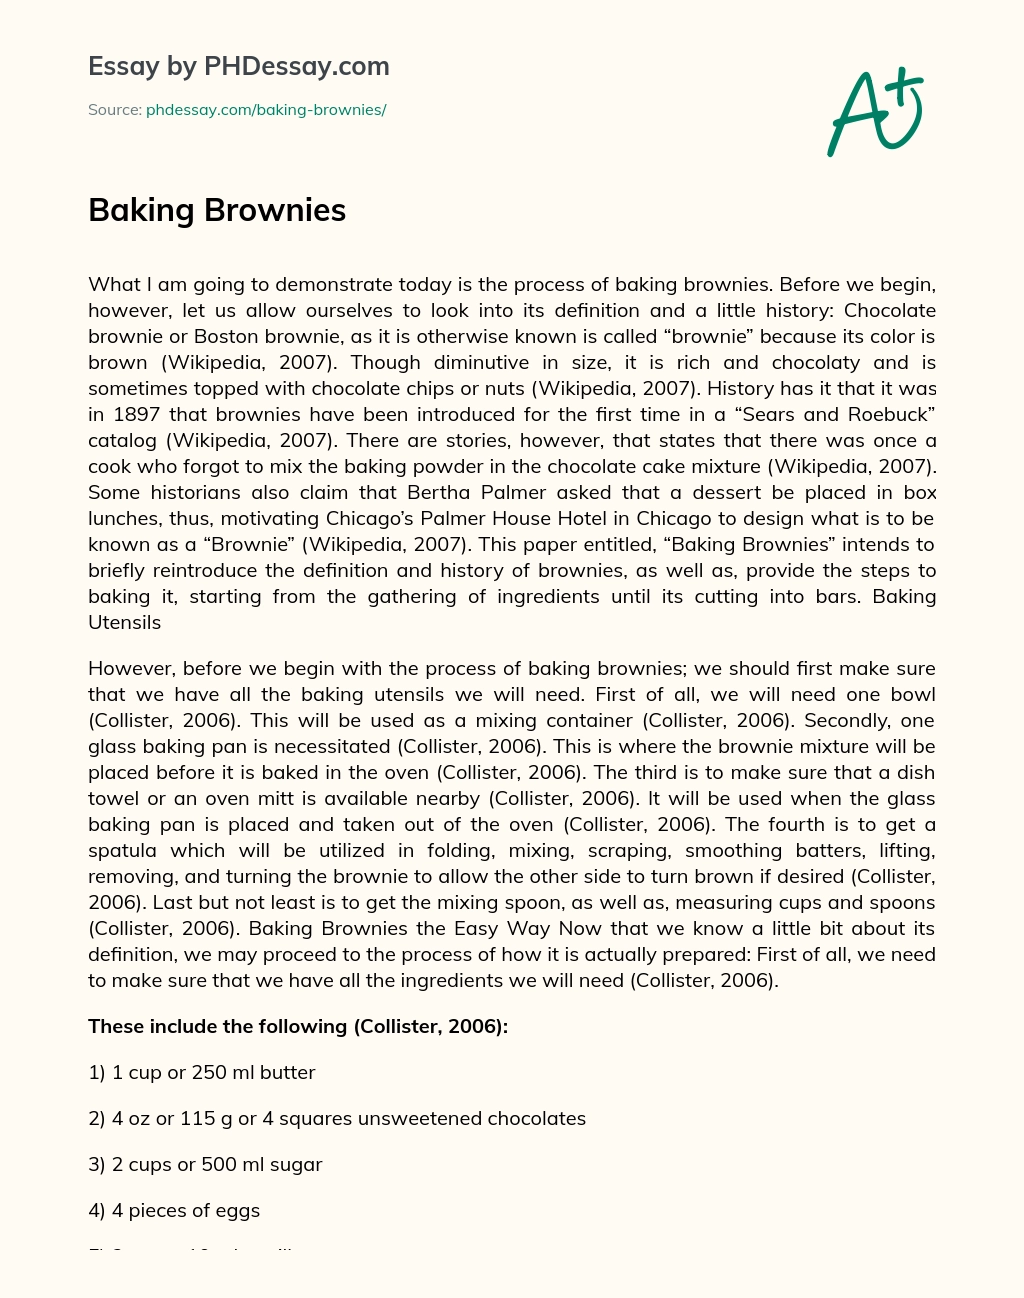 Baking Brownies essay